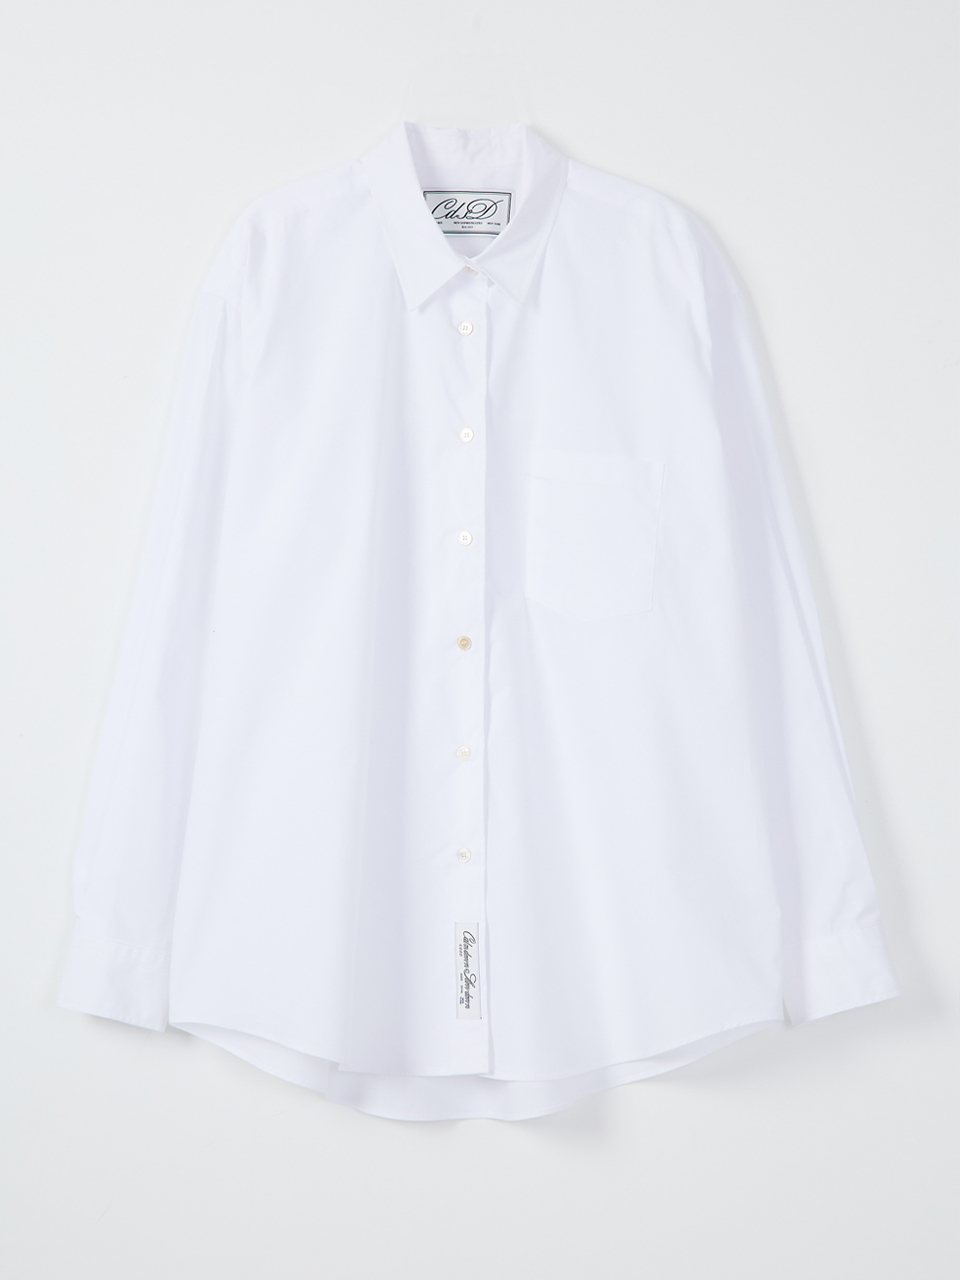 Signature oversize shirts_white